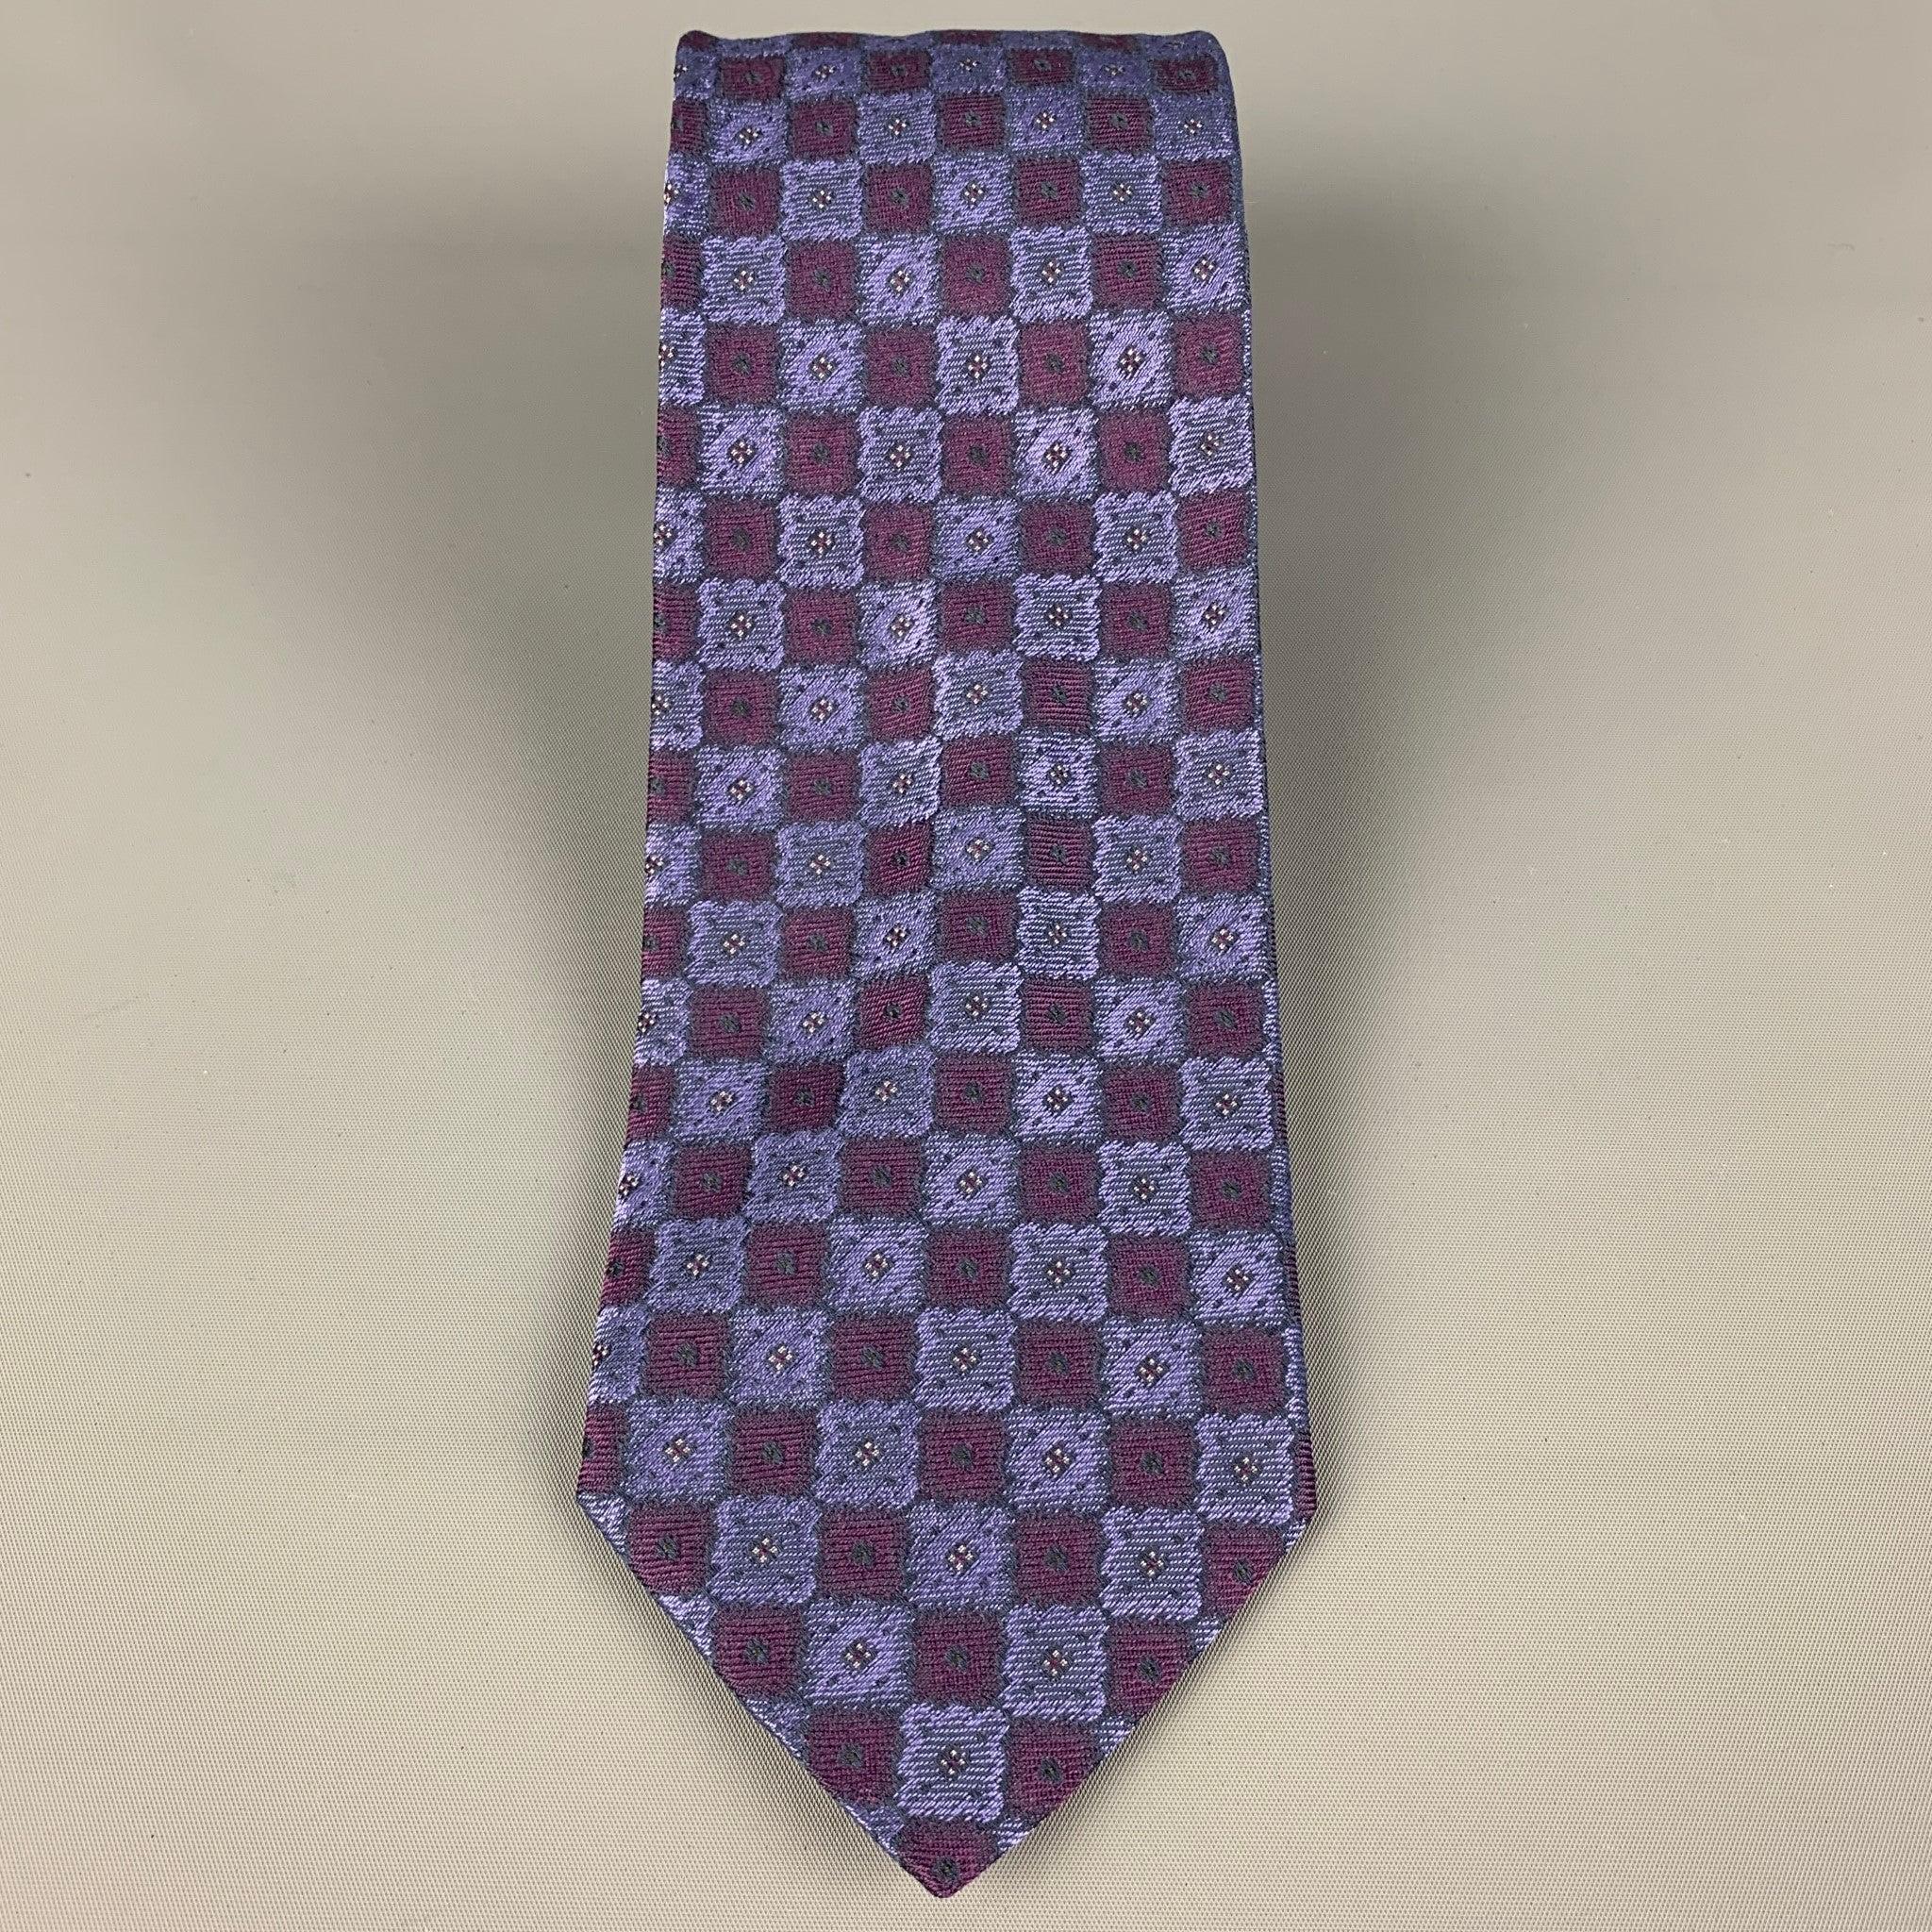 WILKES BASHFORD
Krawatte aus violetter und burgunderroter Seide mit quadratischem All-Over-Druck. Hergestellt in Italien. Sehr guter, gebrauchter Zustand, Breite: 3.75 Zoll  Länge: 62 Zoll 
  
  
 
Sui Generis-Referenz: 120417
Kategorie: